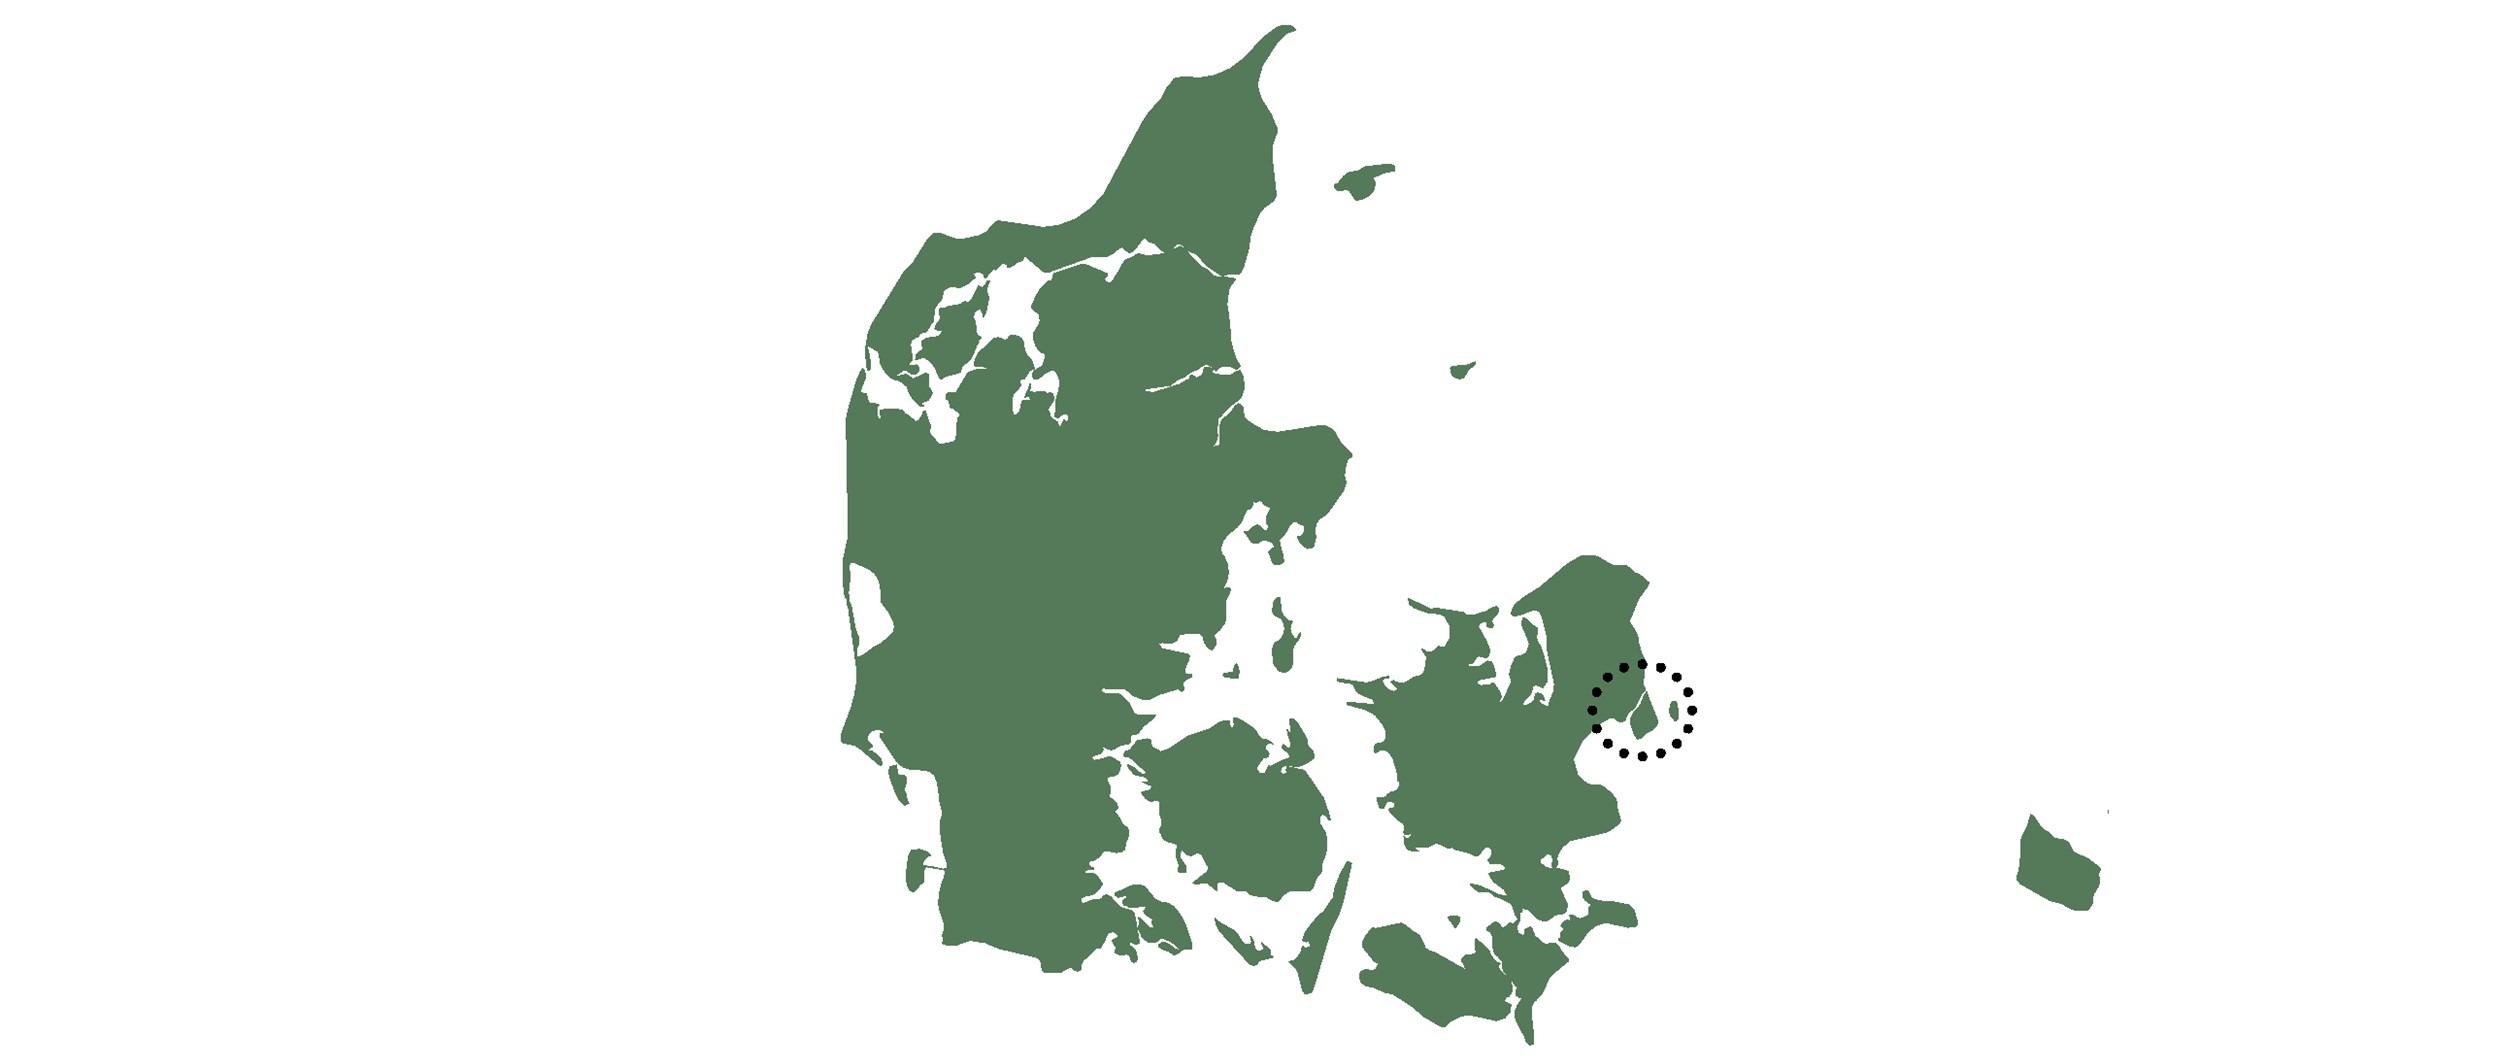 Projektet er beliggende på Amager, nærmere betegnet Ørestad i København.